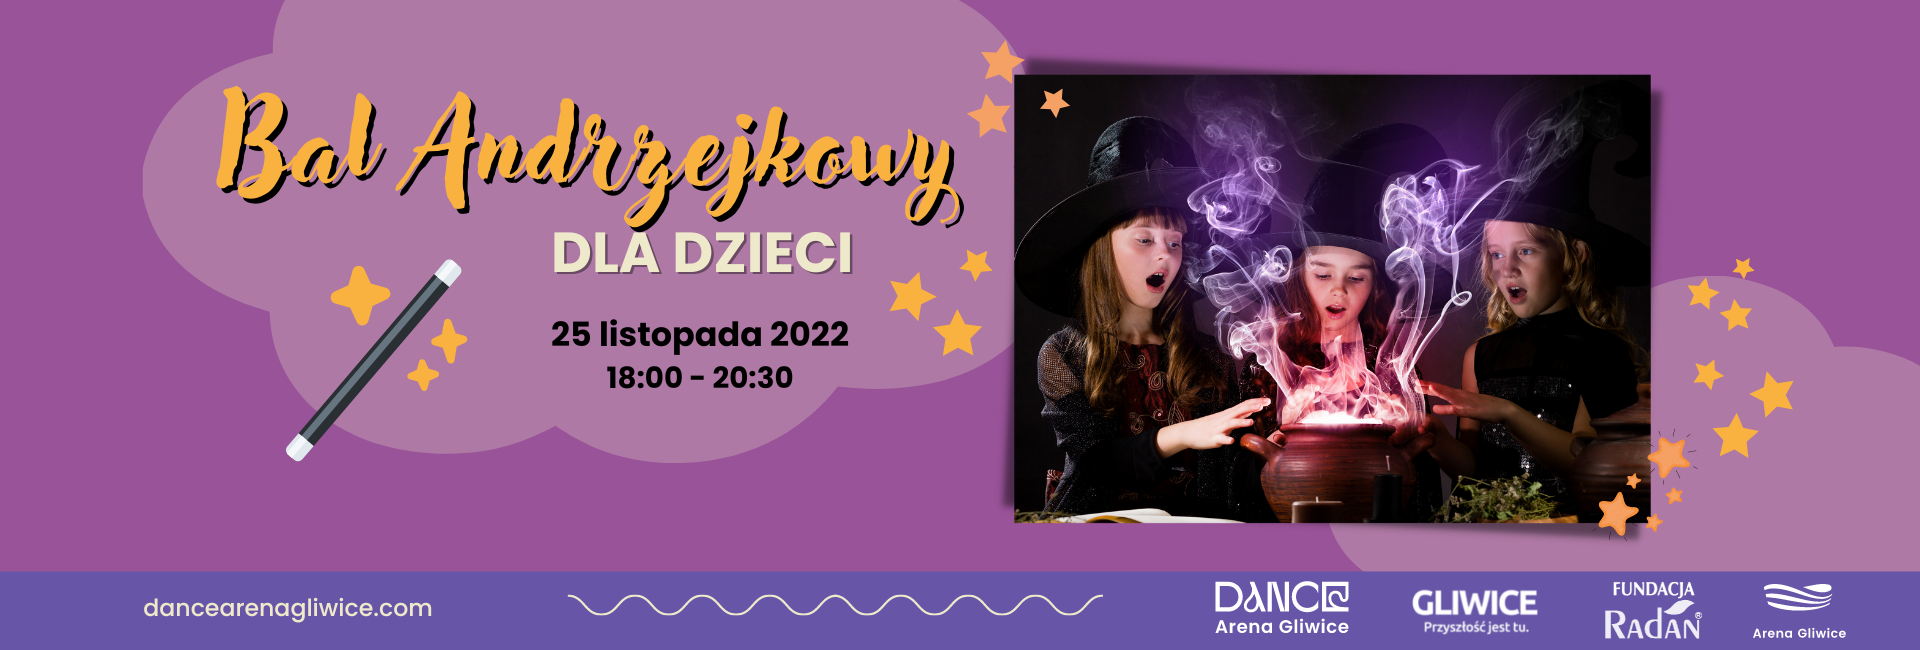 Bal Andrzejkowy dla dzieci • DANCE Arena Gliwice